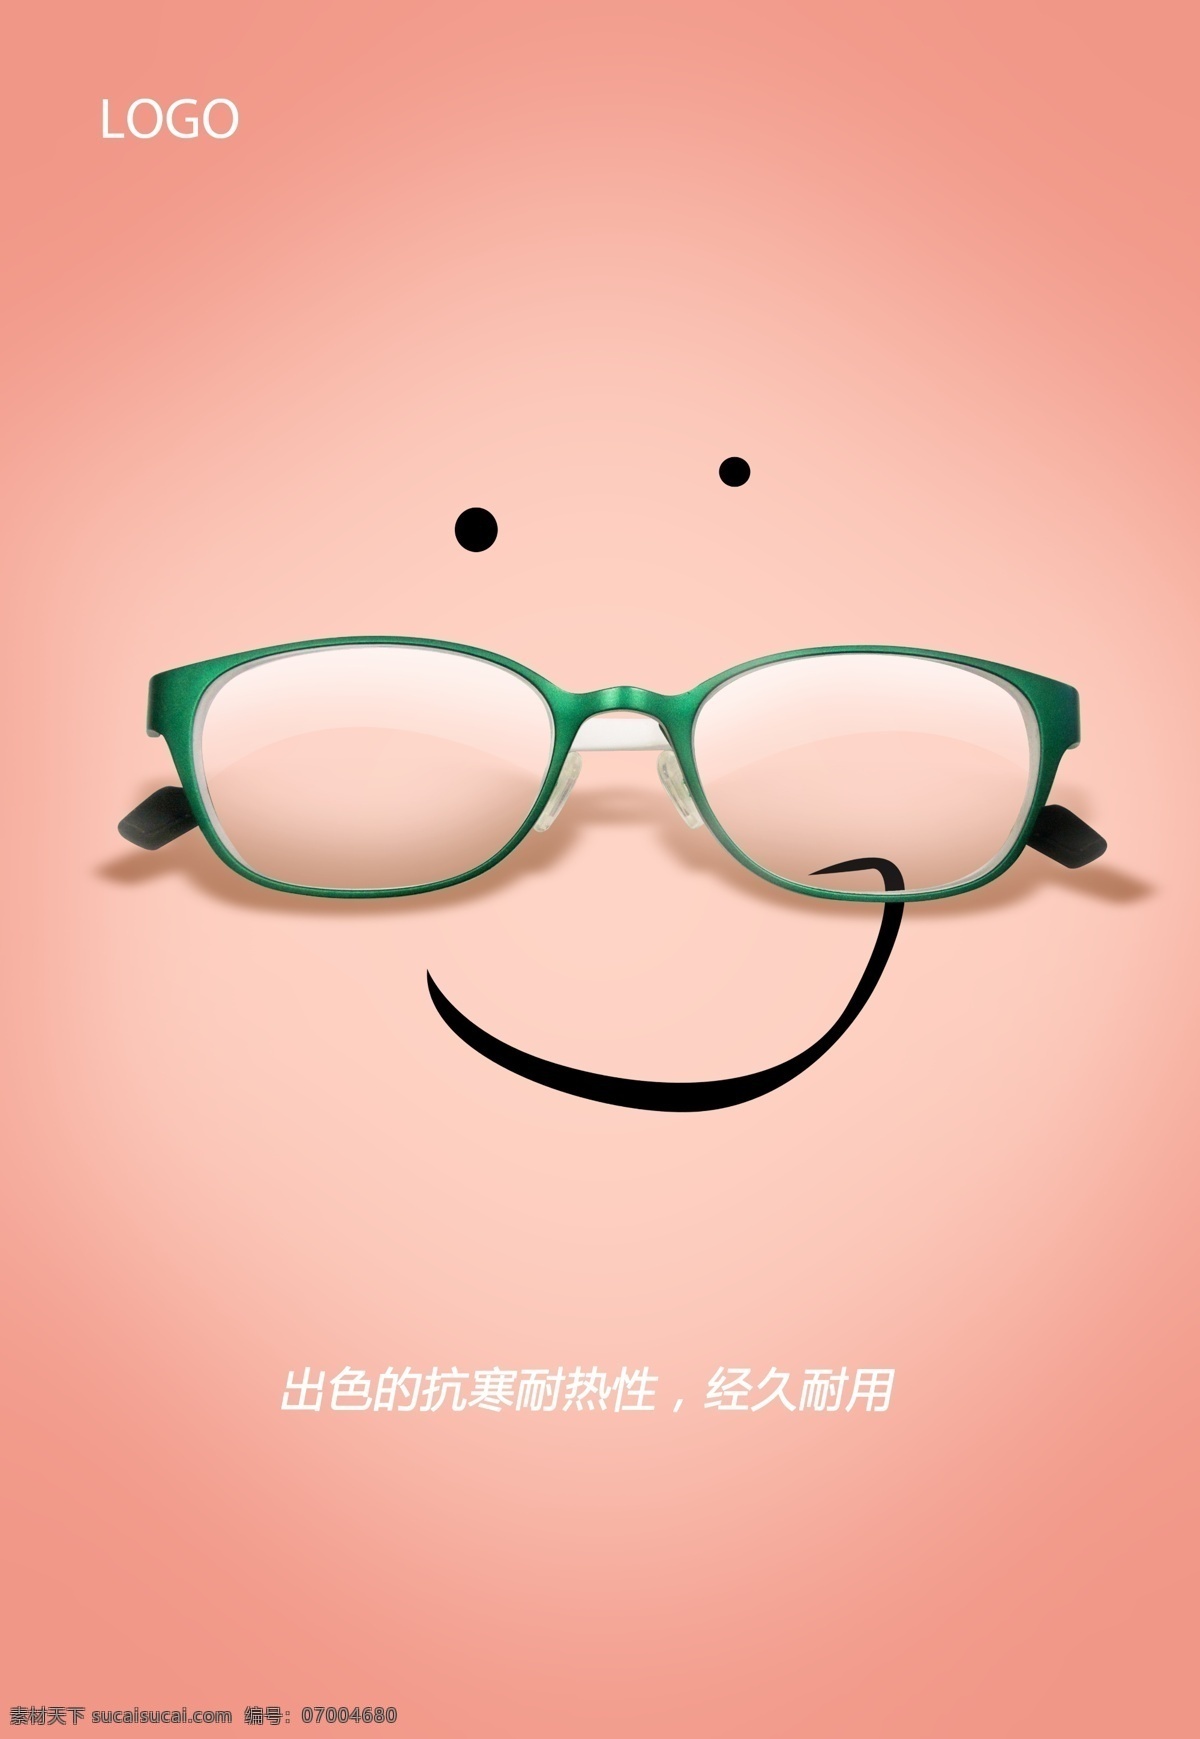 眼镜广告 舒适 眼镜 笑脸 海报 耐用 抗寒 耐热 广告设计模板 源文件